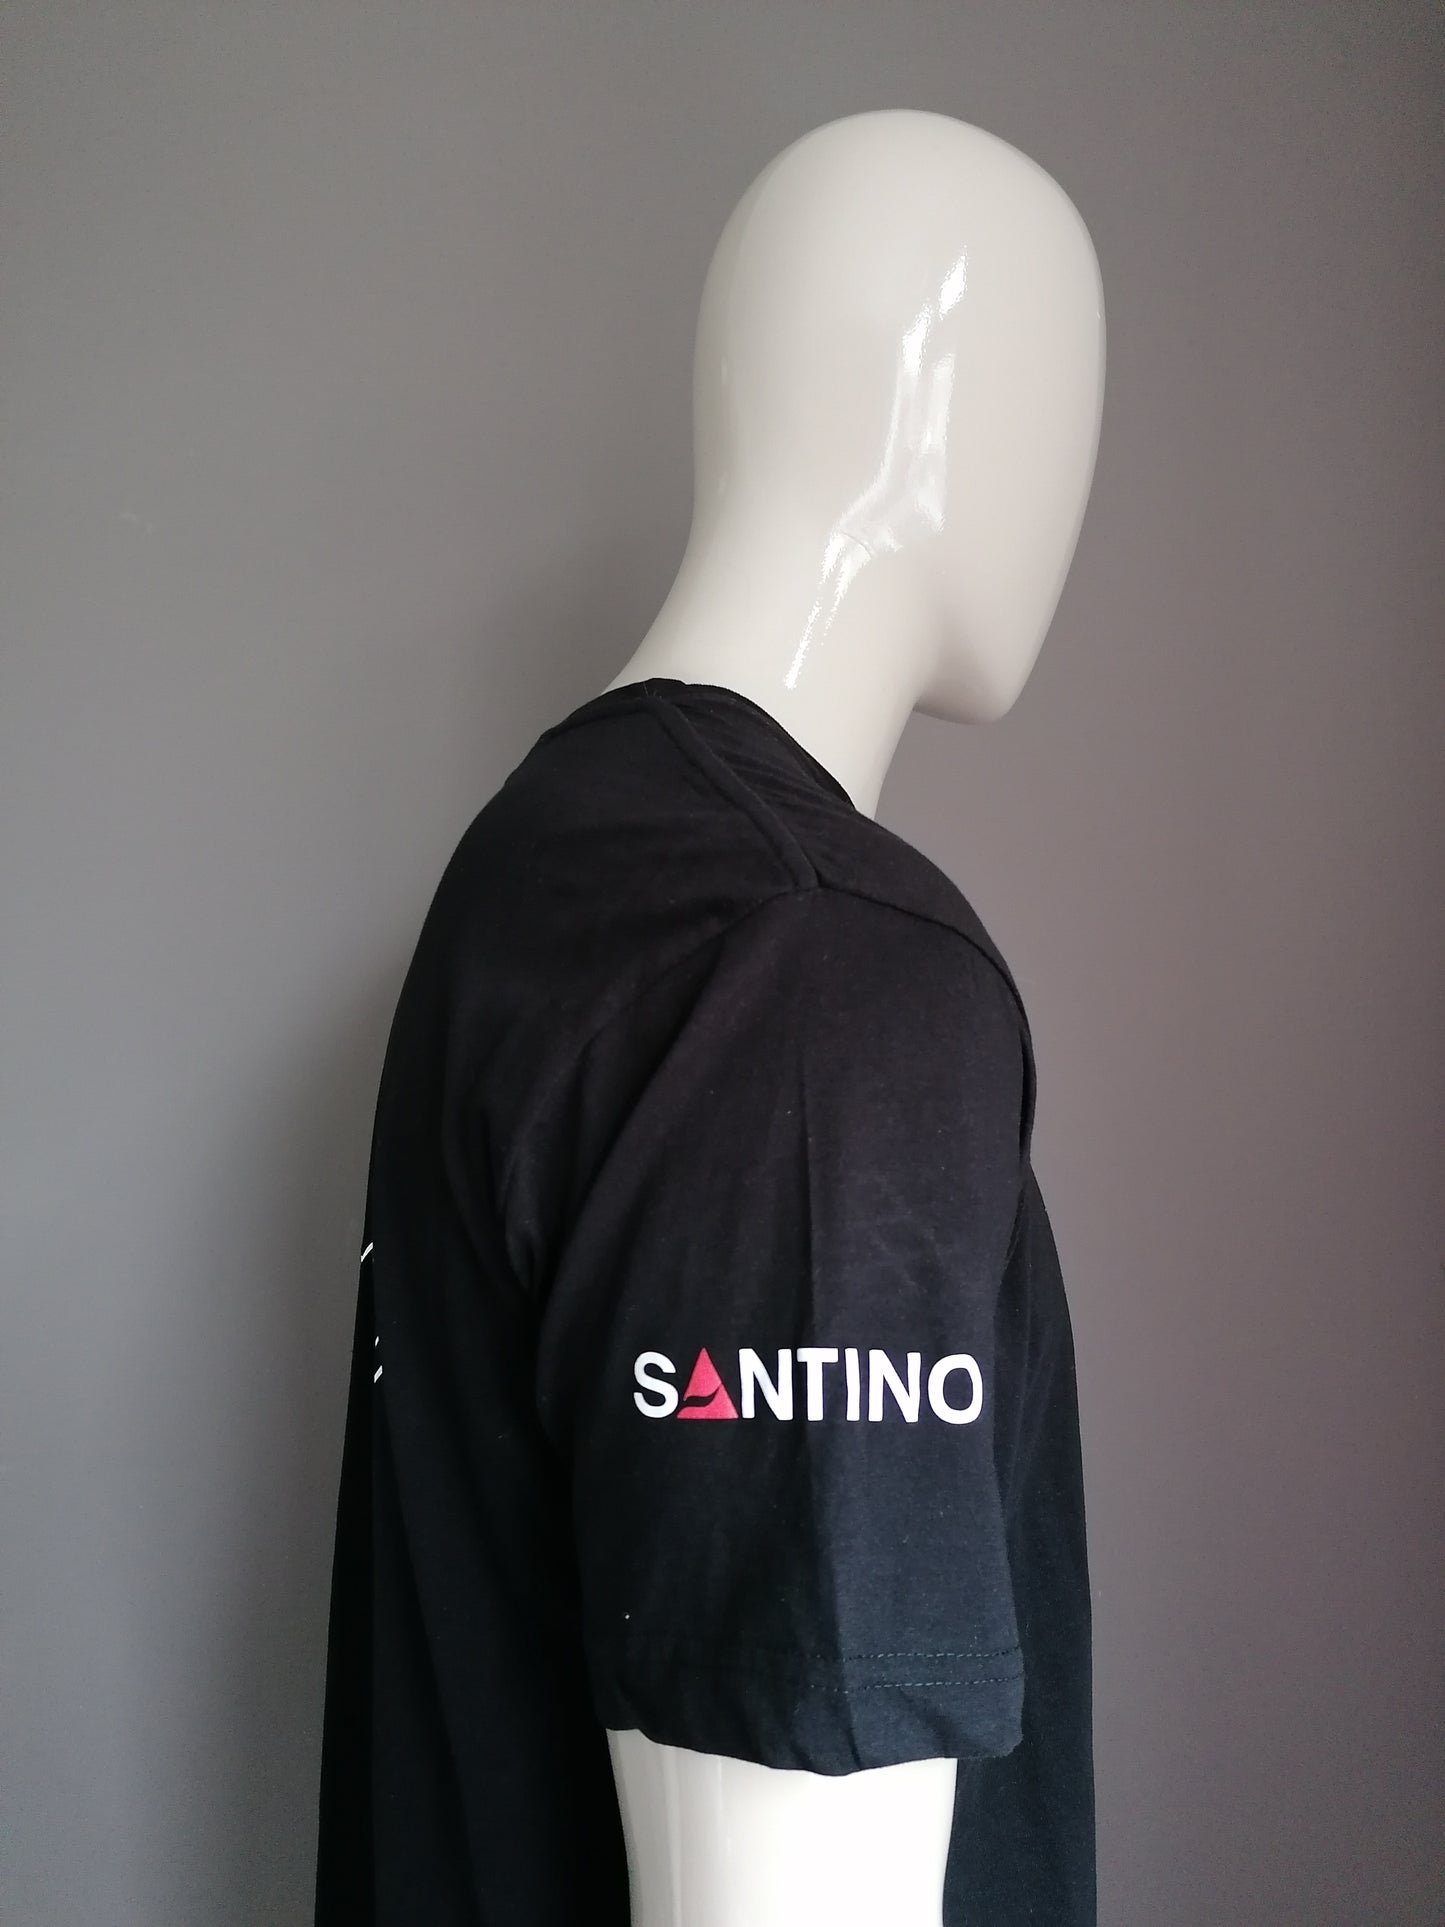 Santino-Hemd. Farbig schwarz. Größe XL.